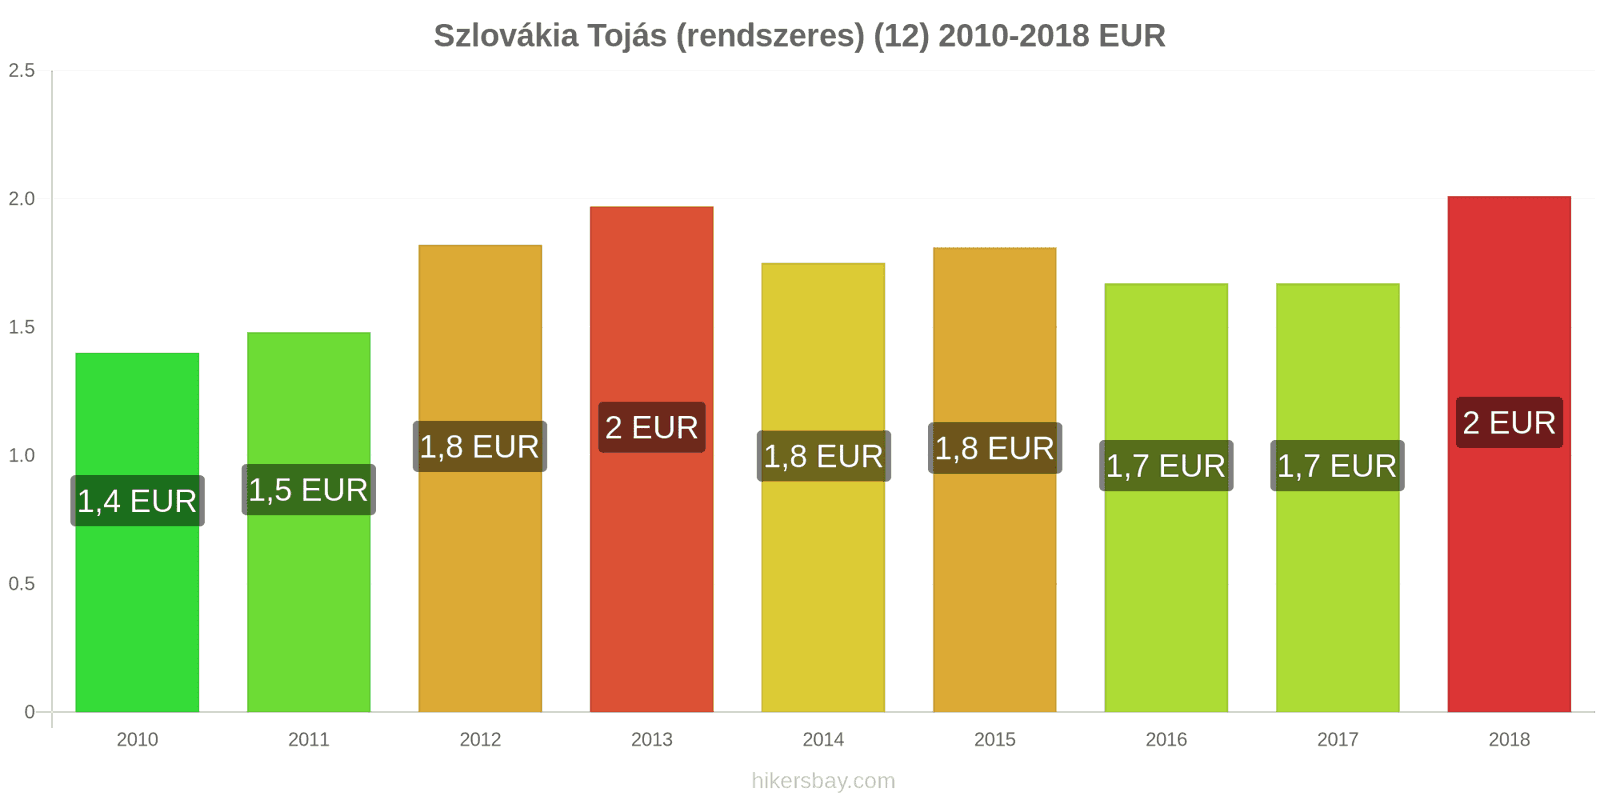 Szlovákia ár változások Tojás (normál) (12) hikersbay.com